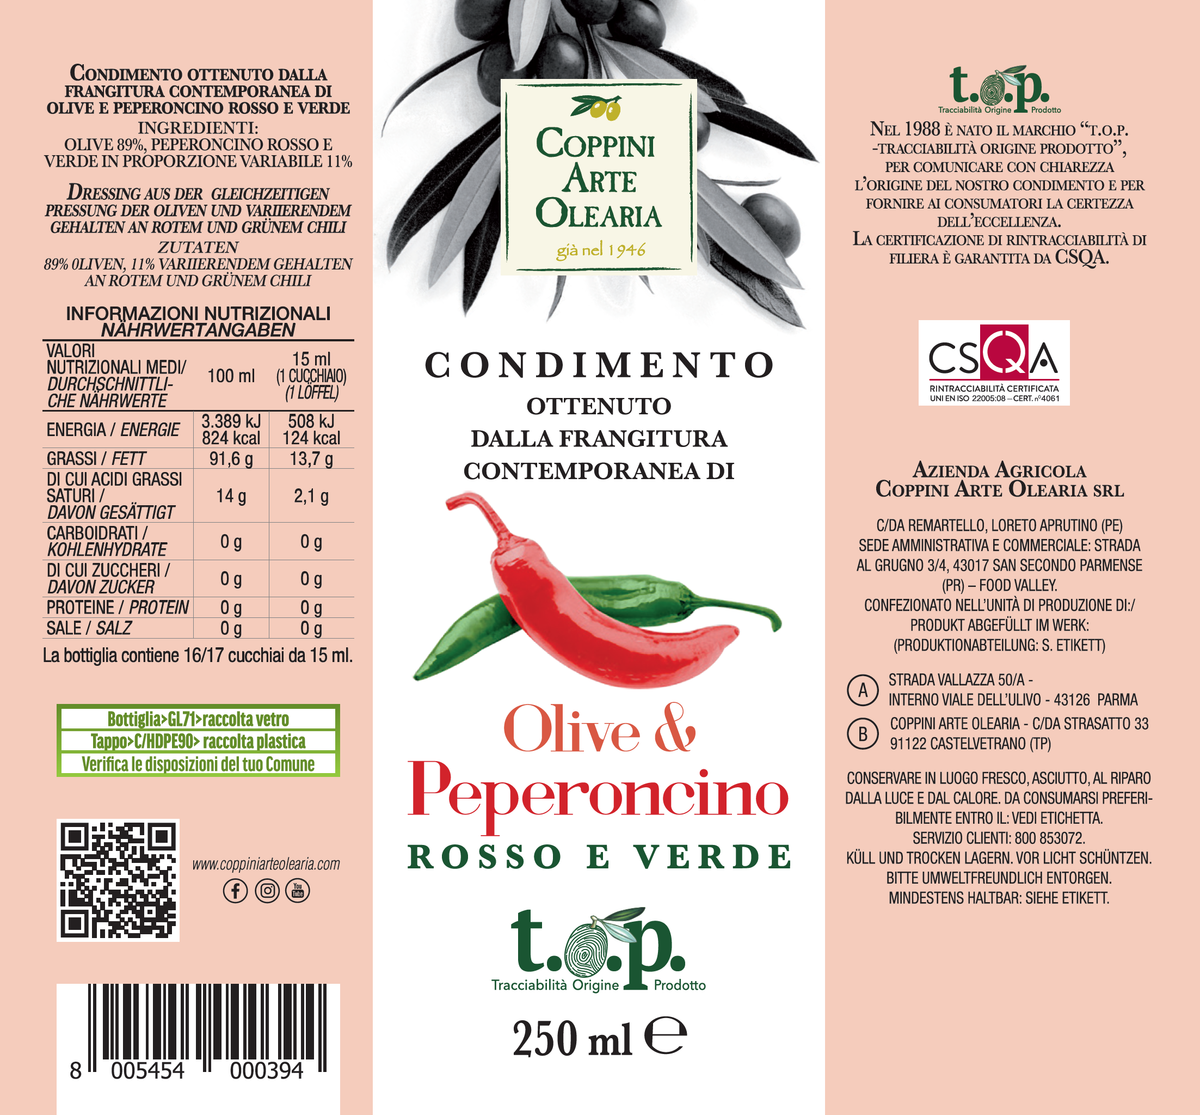 Etichetta Olio Evo e Peperoncino di Coppini Arte Olearia